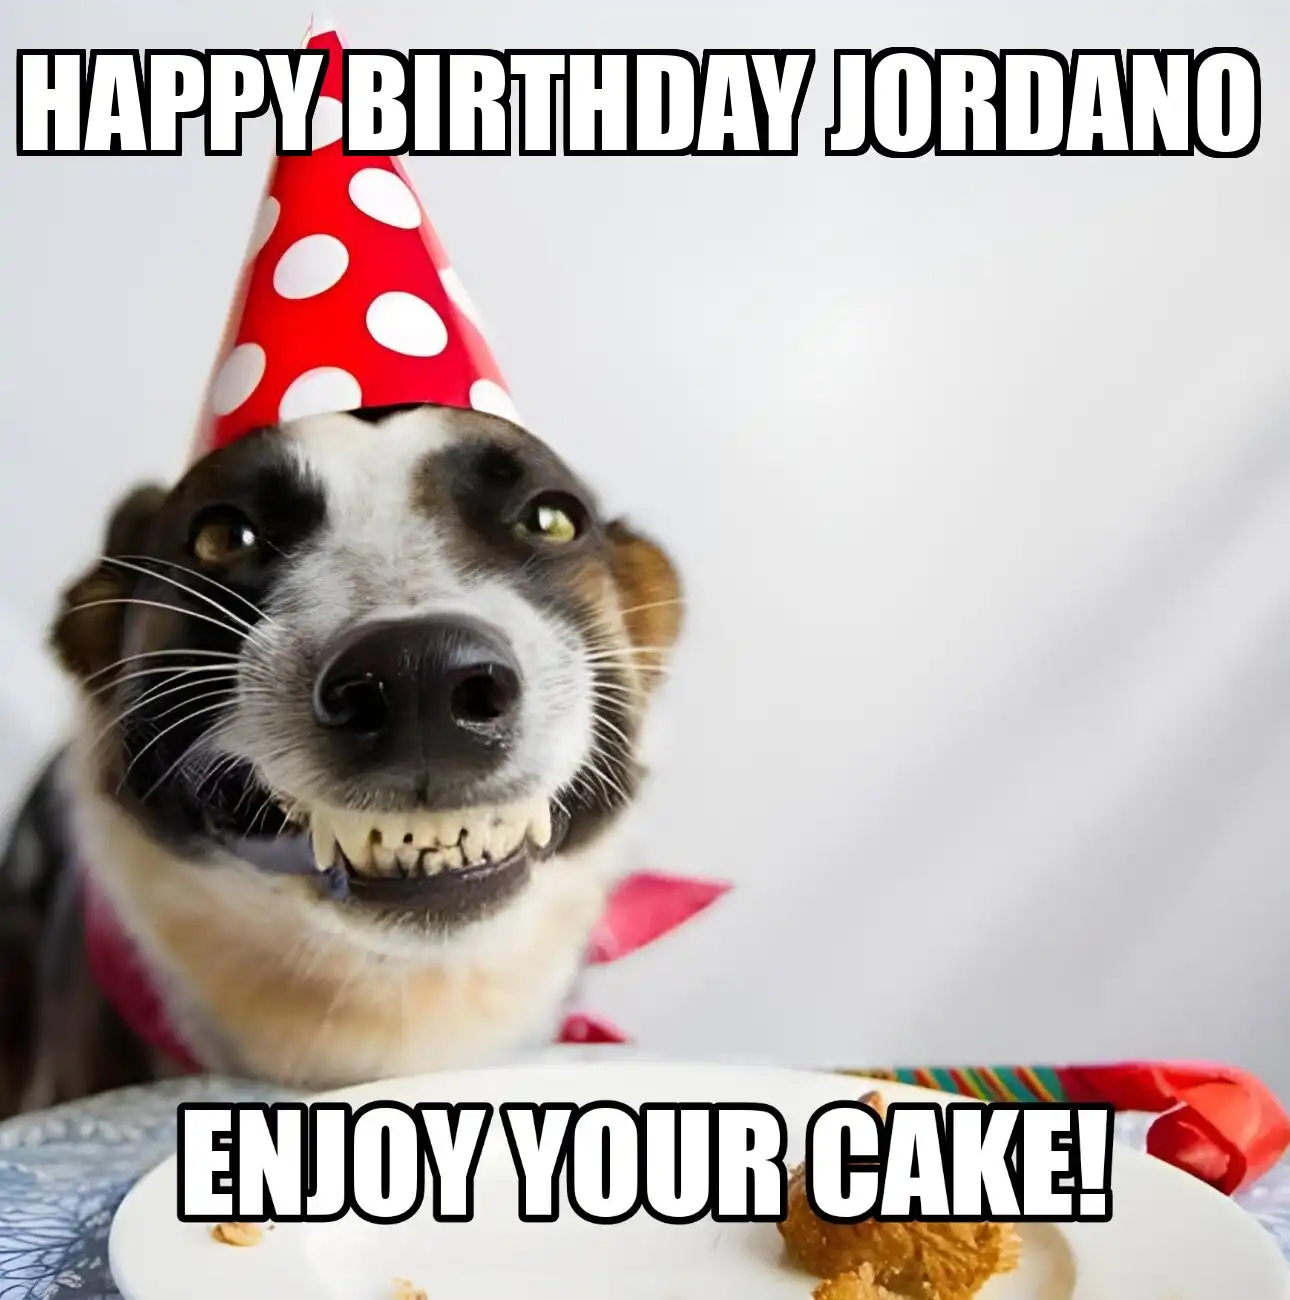 Happy Birthday Jordano Enjoy Your Cake Dog Meme